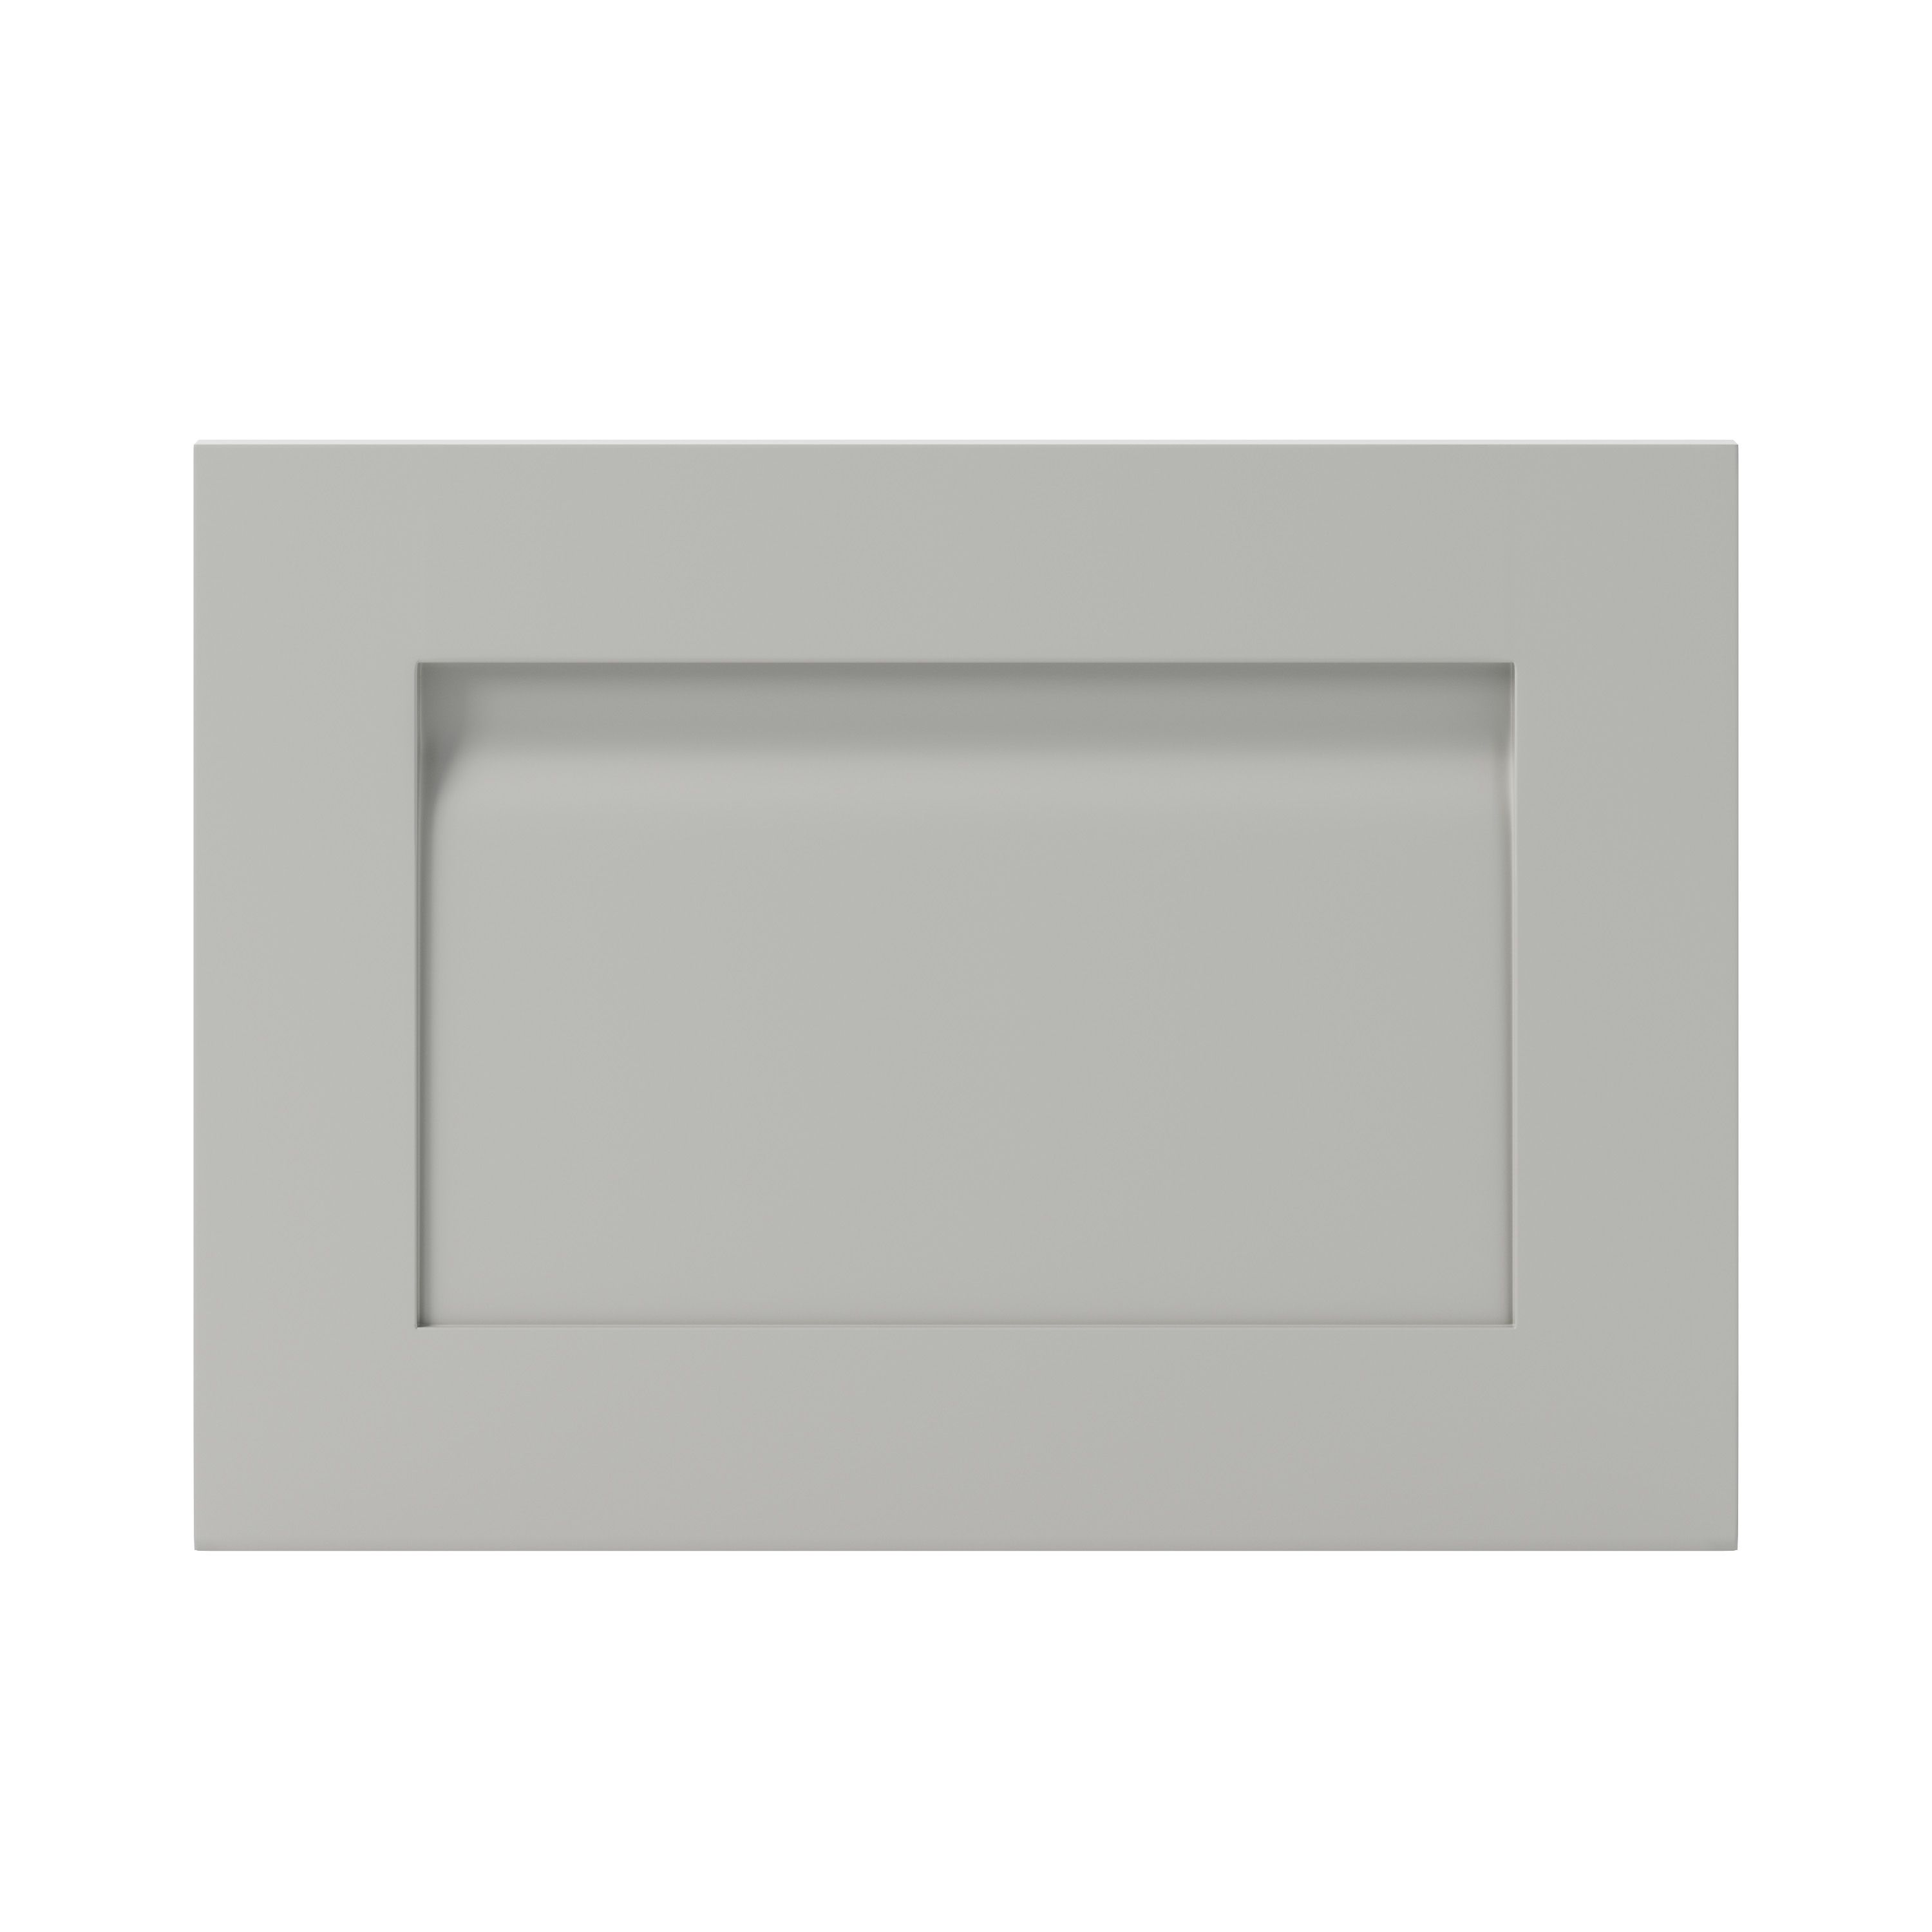 GoodHome Garcinia Matt stone integrated handle shaker Drawer front, bridging door & bi fold door, (W)500mm (H)356mm (T)20mm